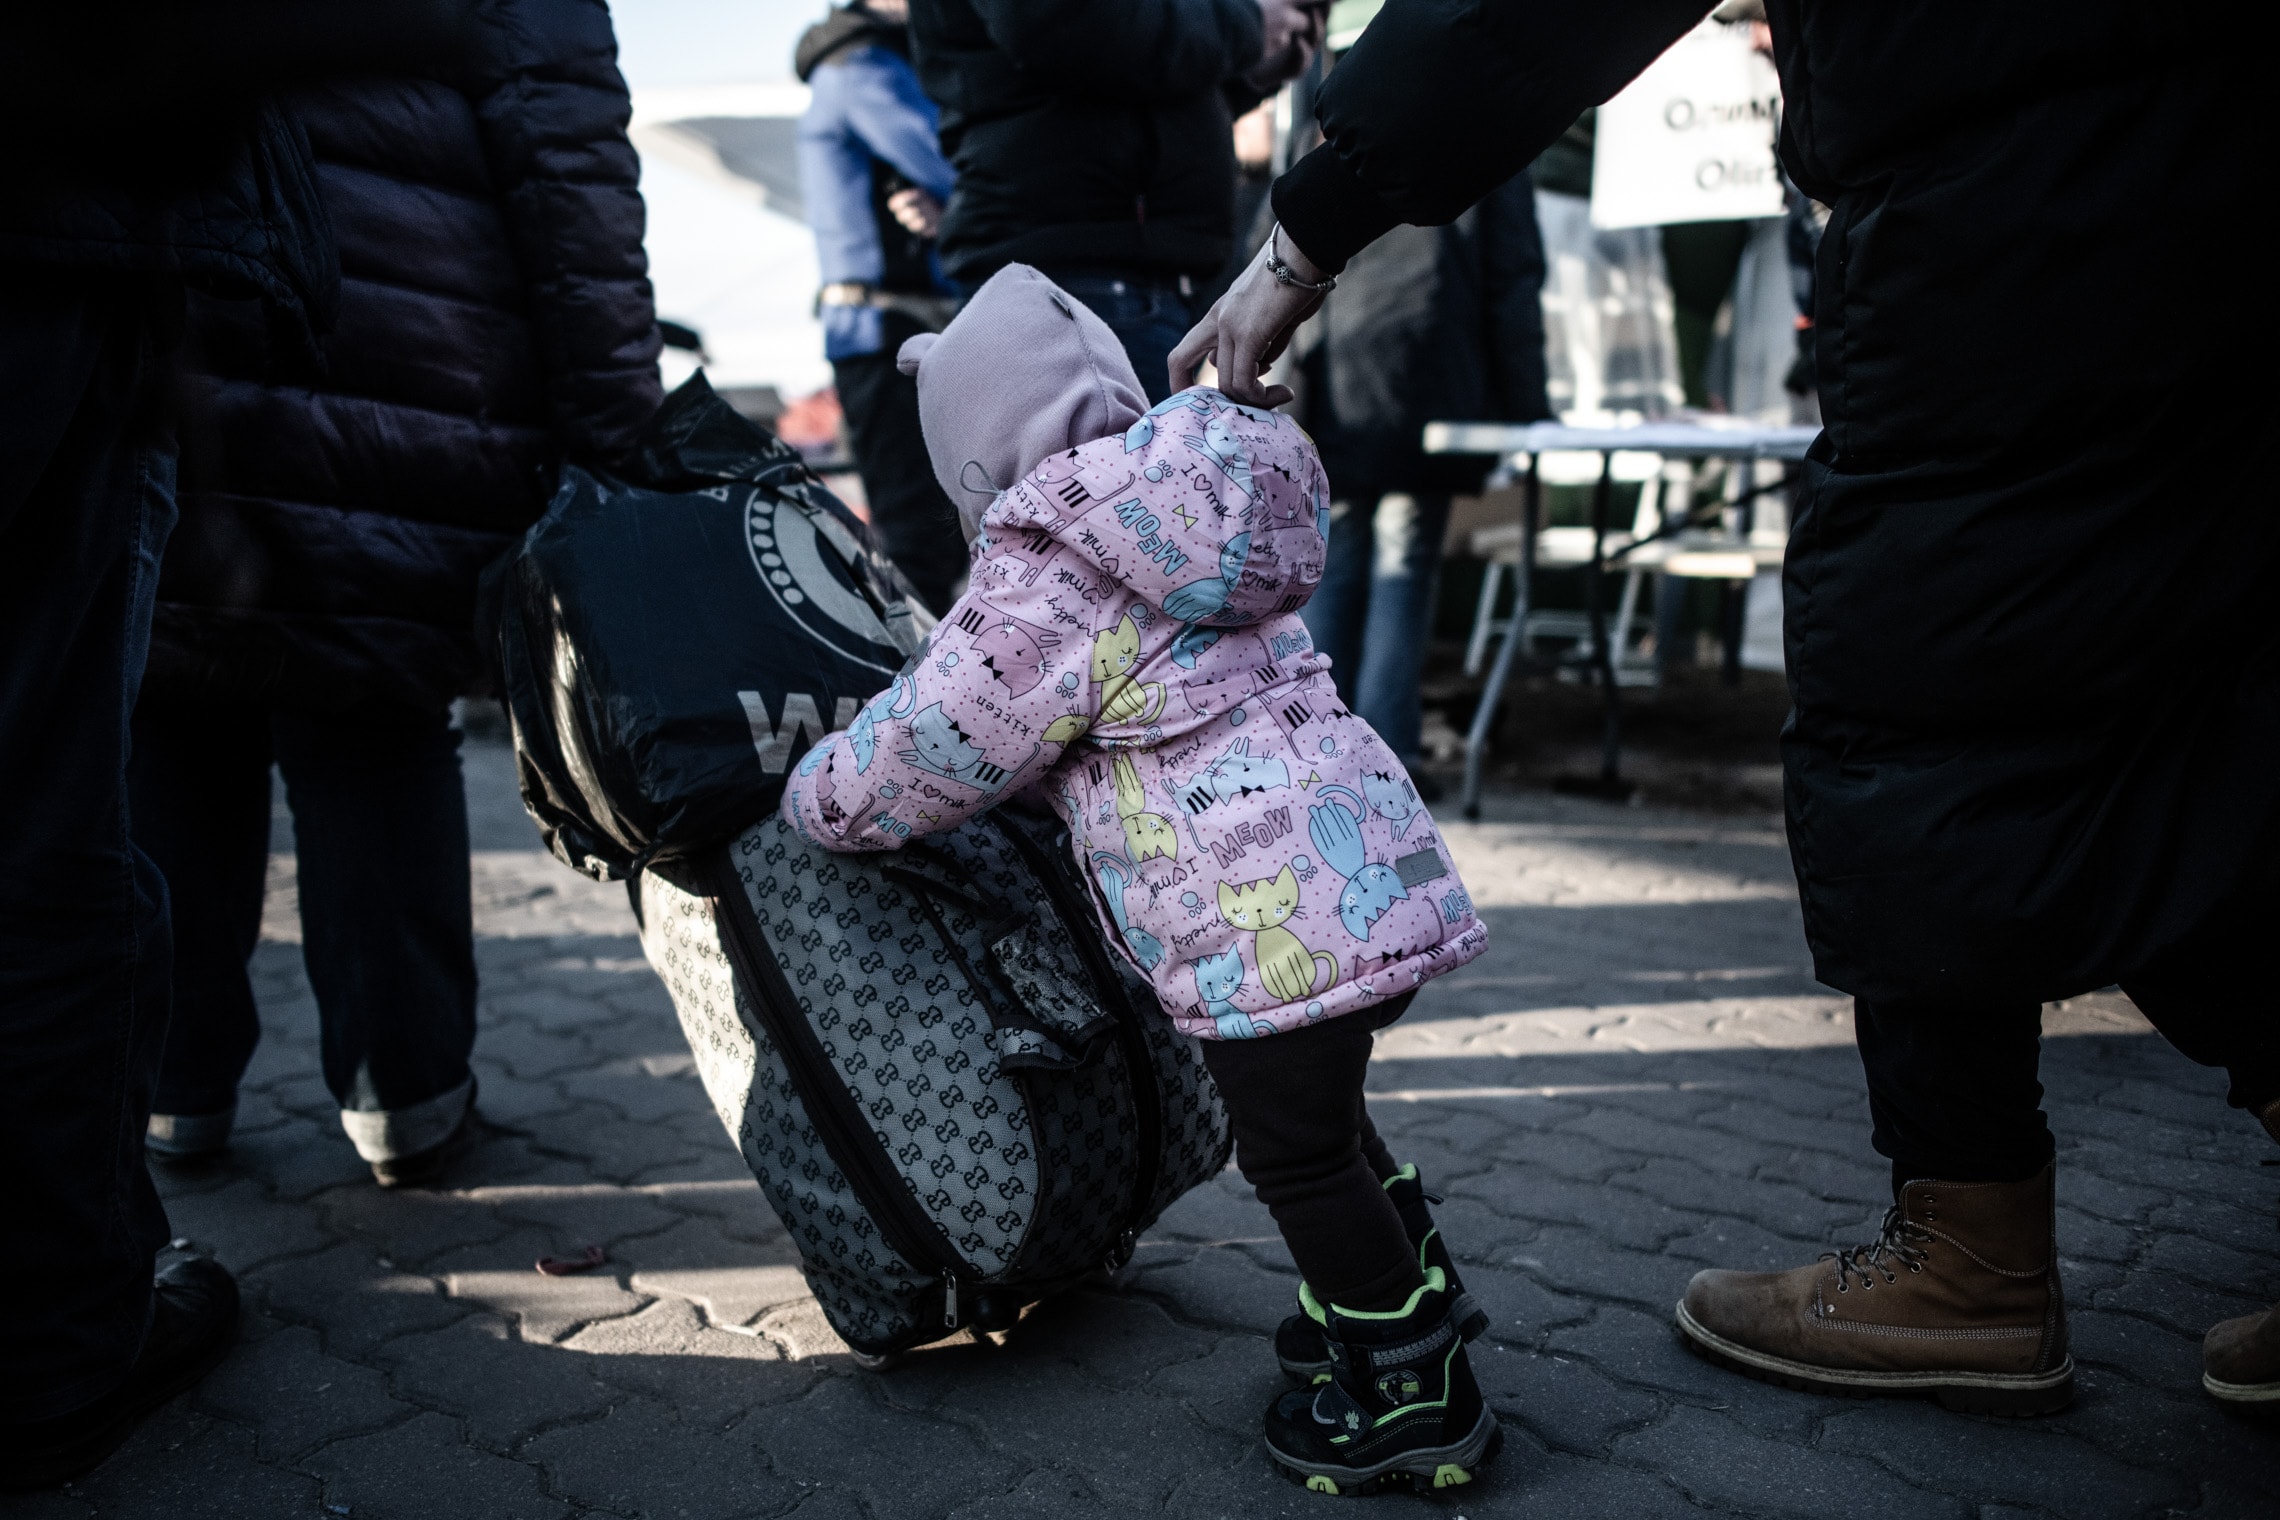 פליטים חוצים אל פולין ממעבר הגבול מדיקה (צילום: גילעד שדה)